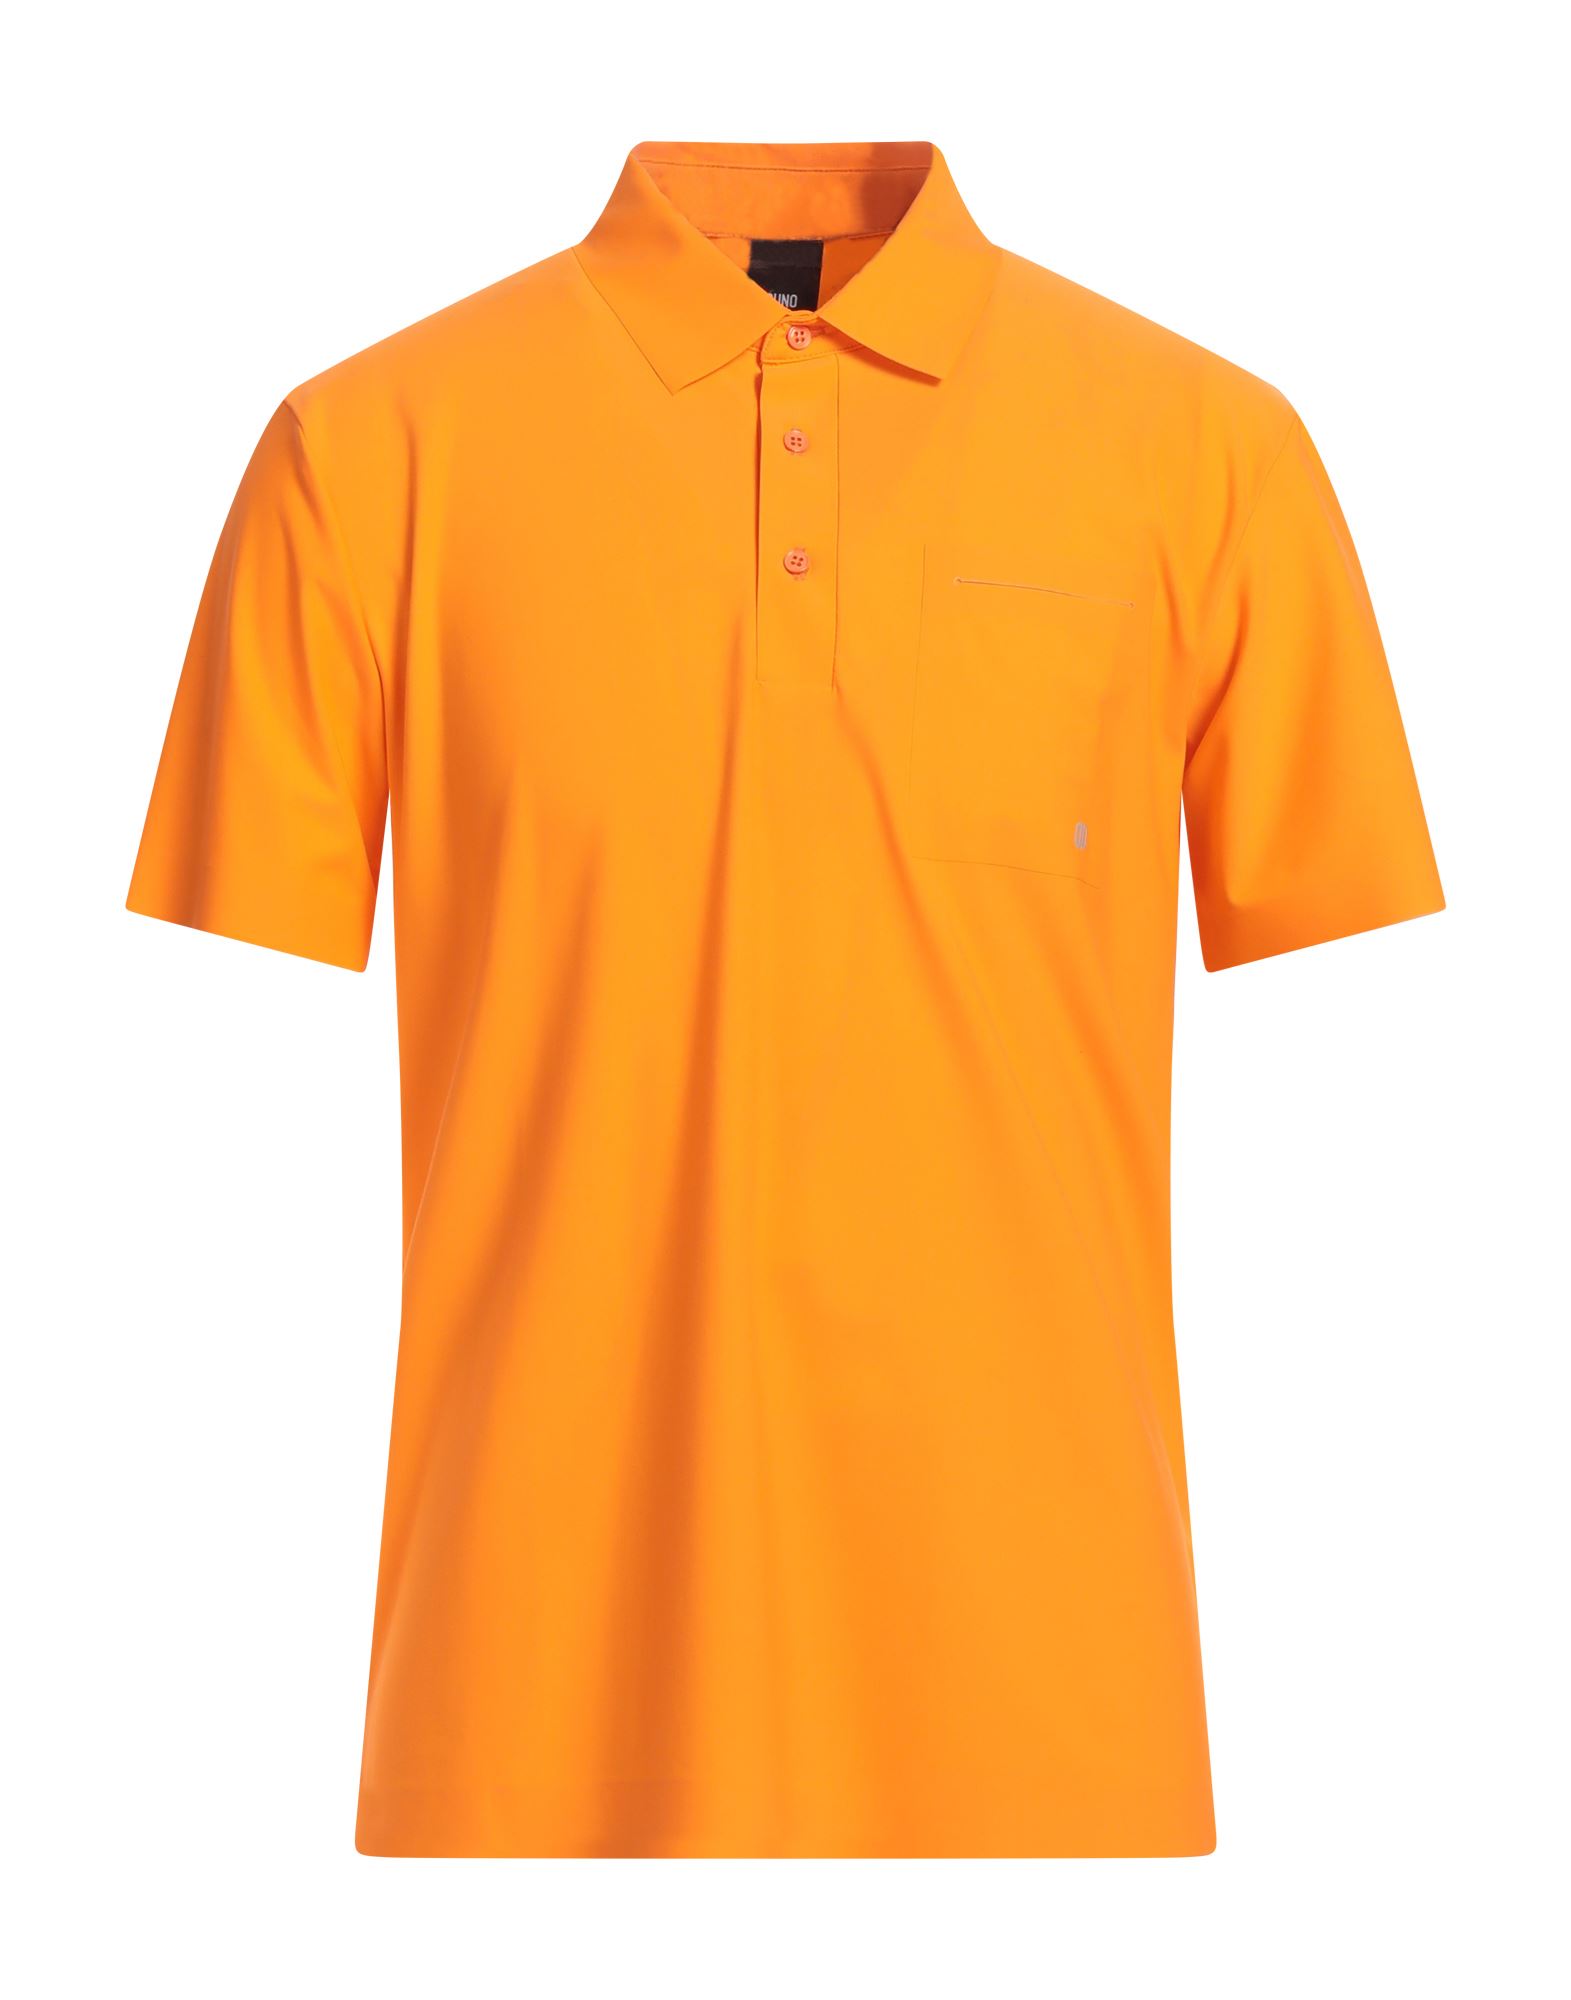 DUNO Poloshirt Herren Orange von DUNO